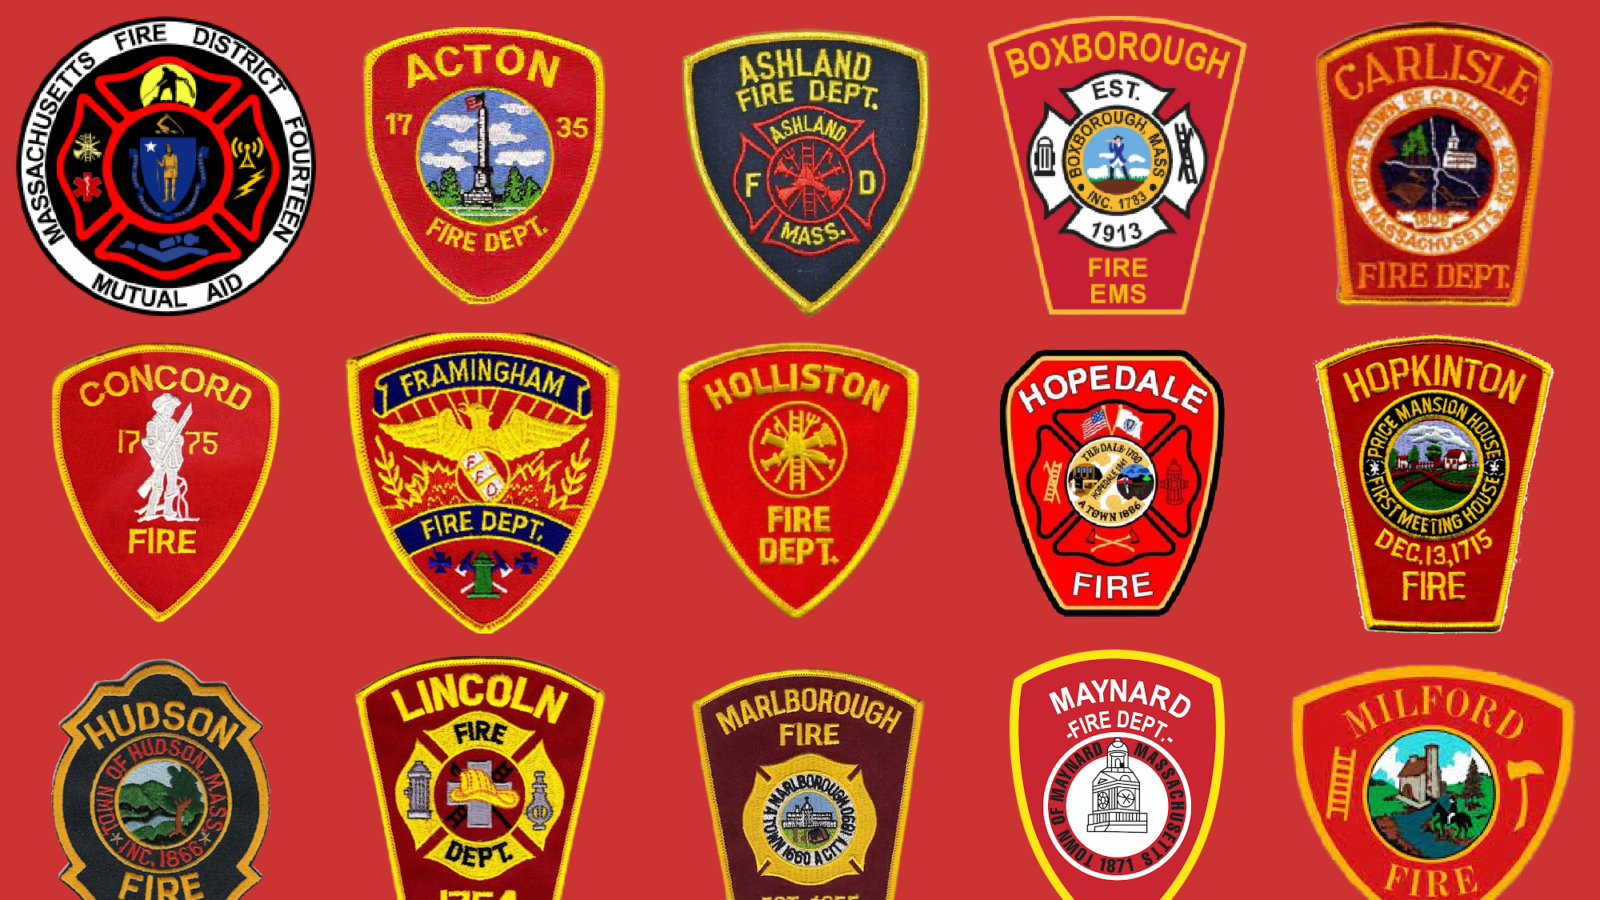 Massachusetts Fire District 14